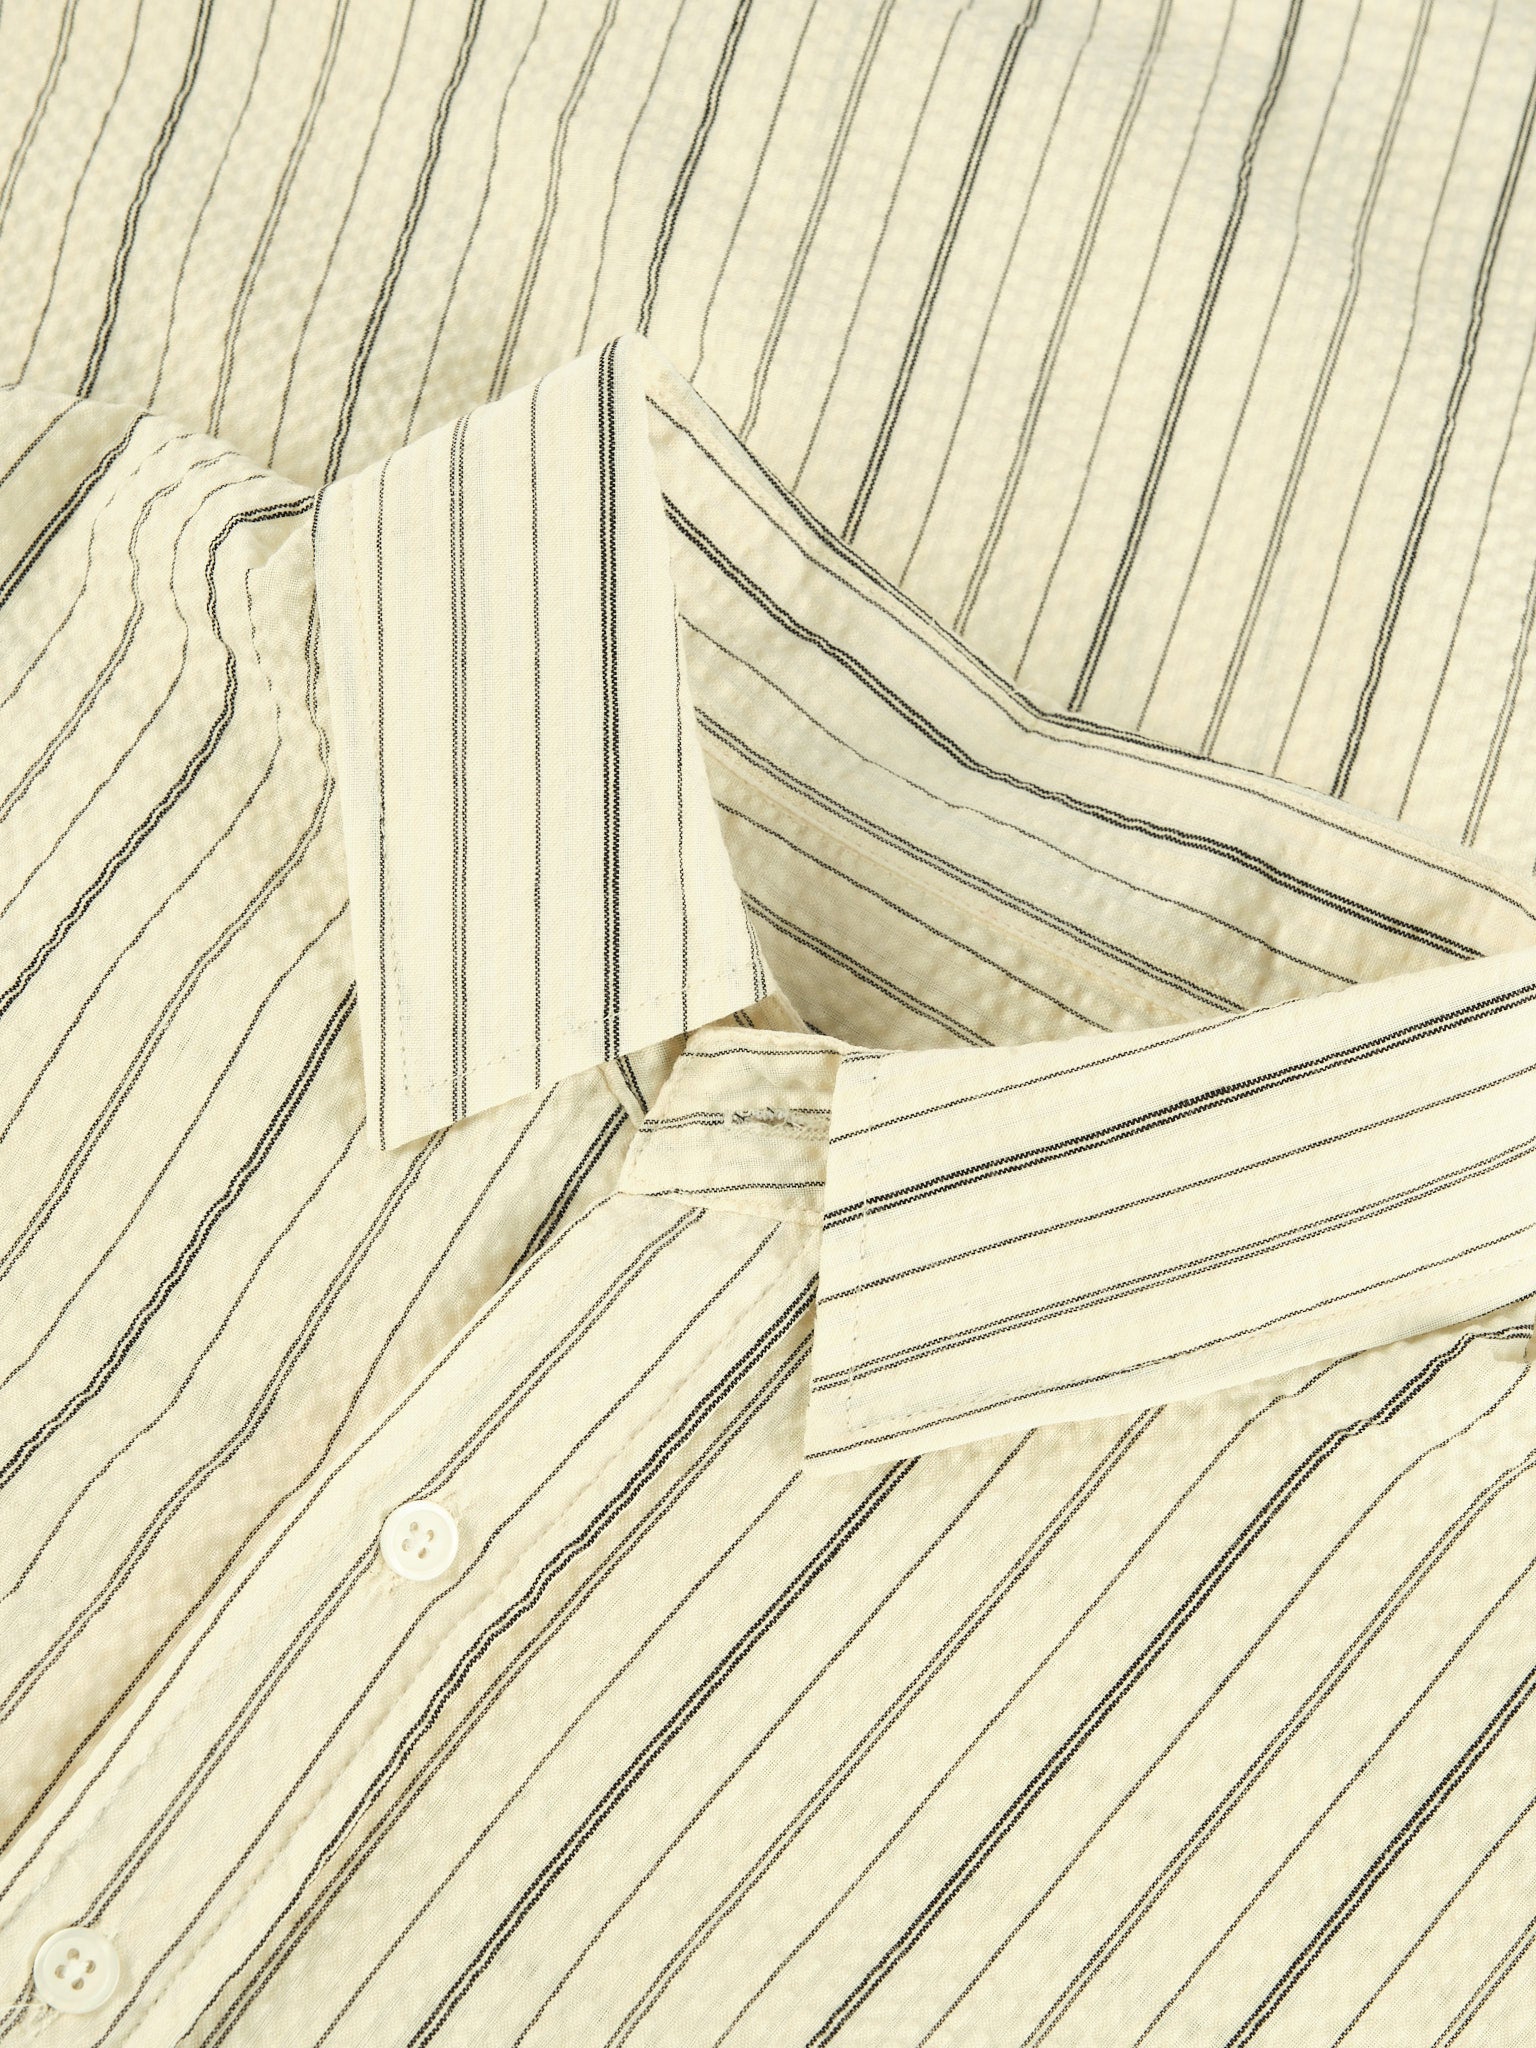 Textured Stripe Shirt